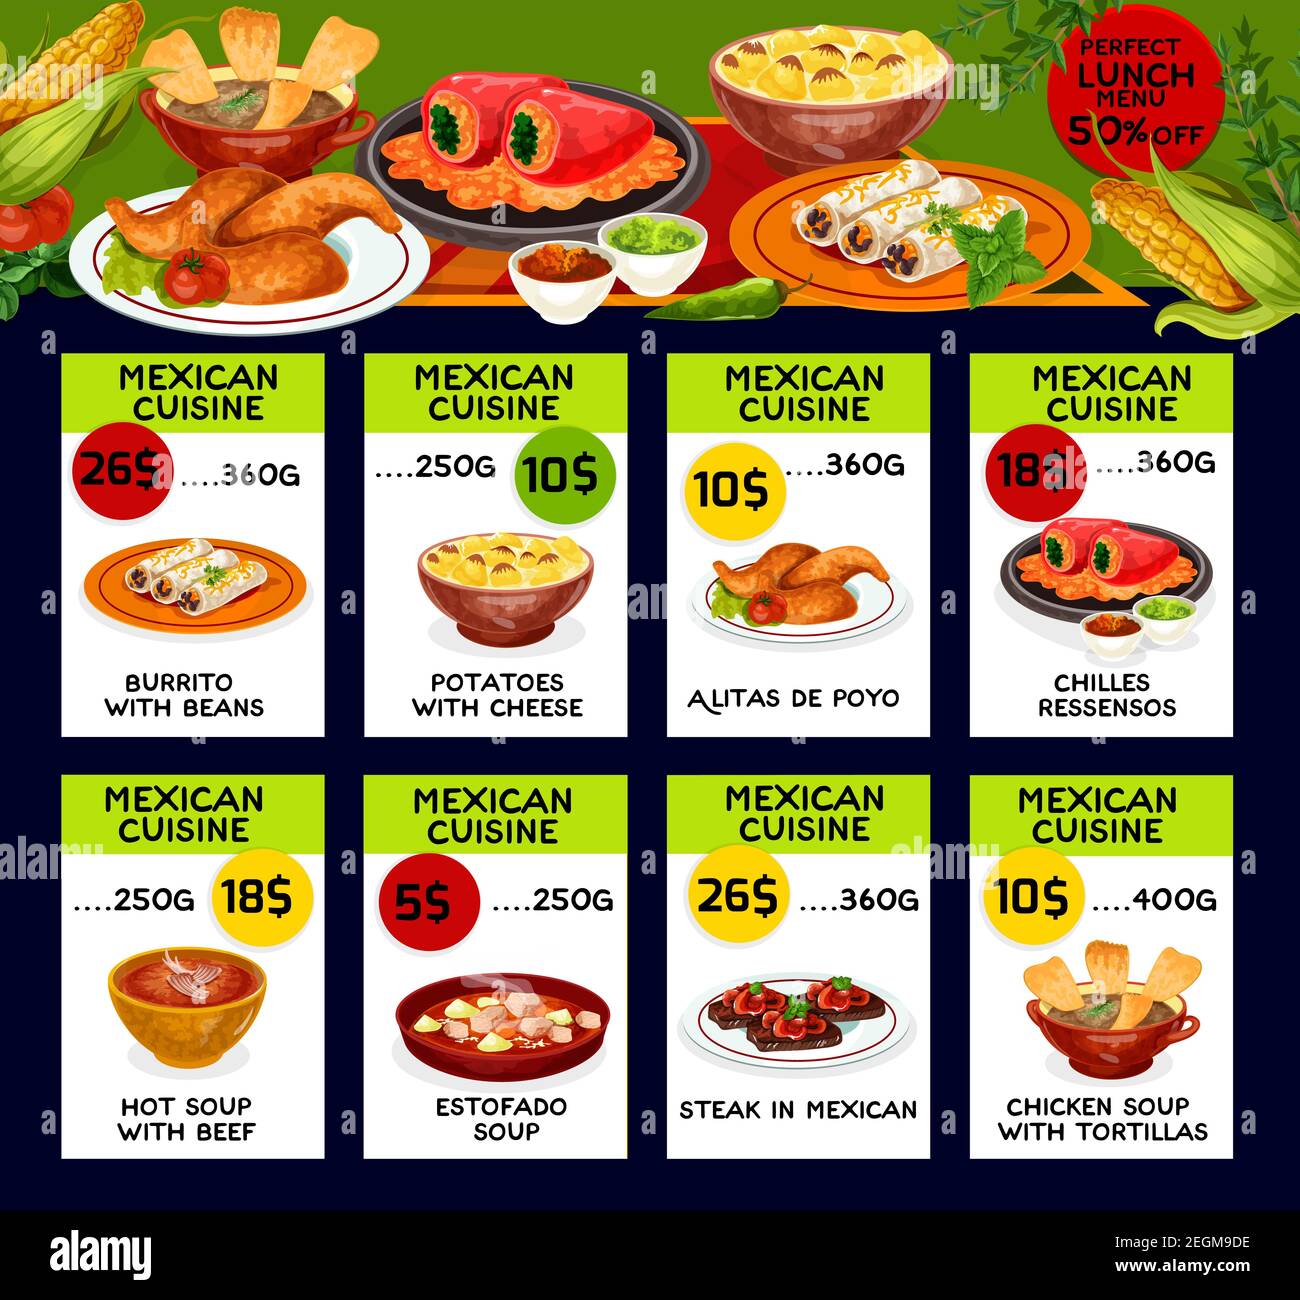 Carte dei prezzi del menu tradizionale della cucina messicana. Vector lunch Offer design per burritos, patate con formaggio o alitas de pollo e Chilles Ress Illustrazione Vettoriale